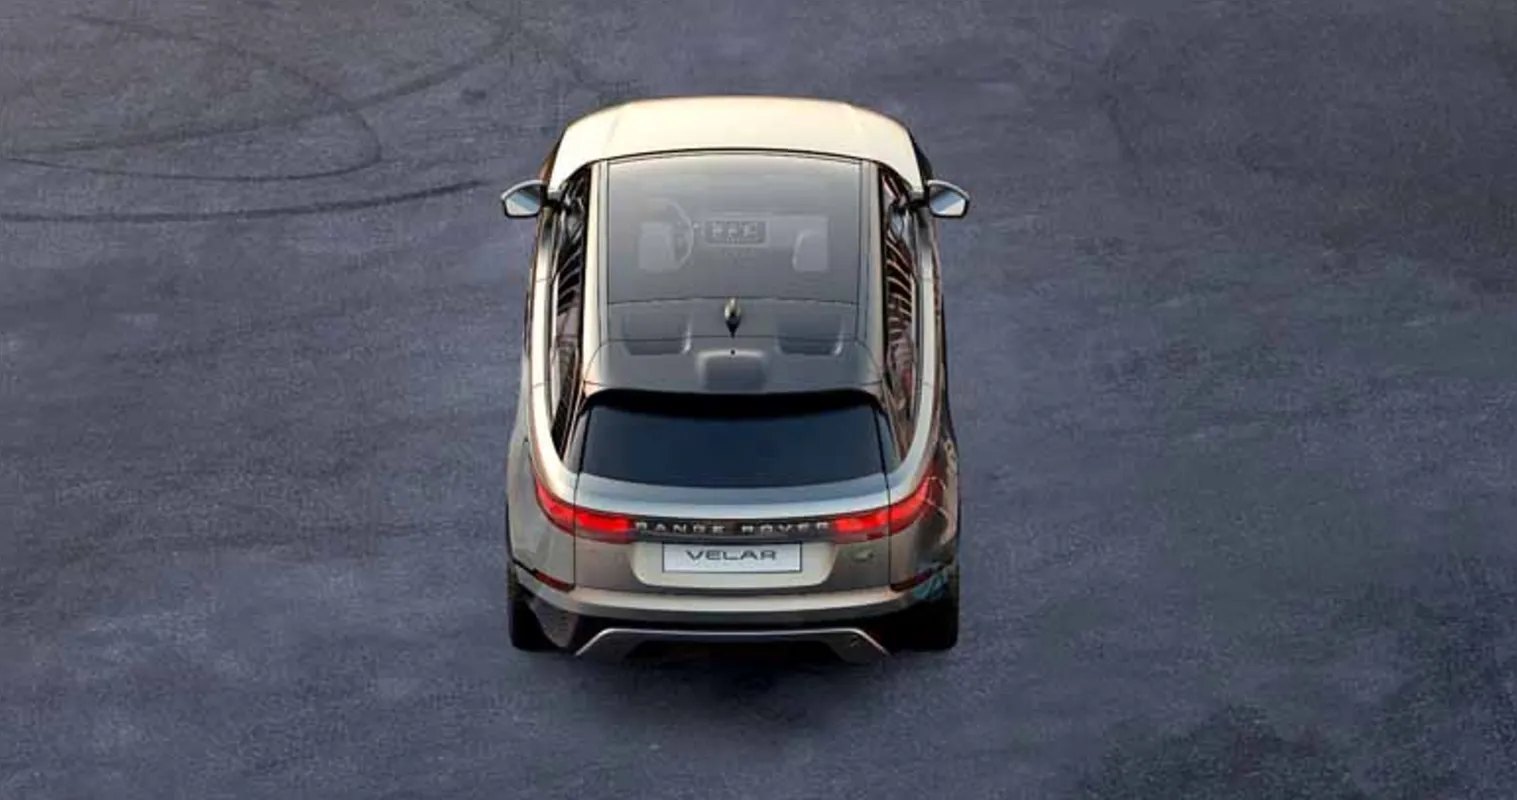 Land Rover apresentou no Salão do Automóvel de Genebra o Velar, novo membro da família Range Rover